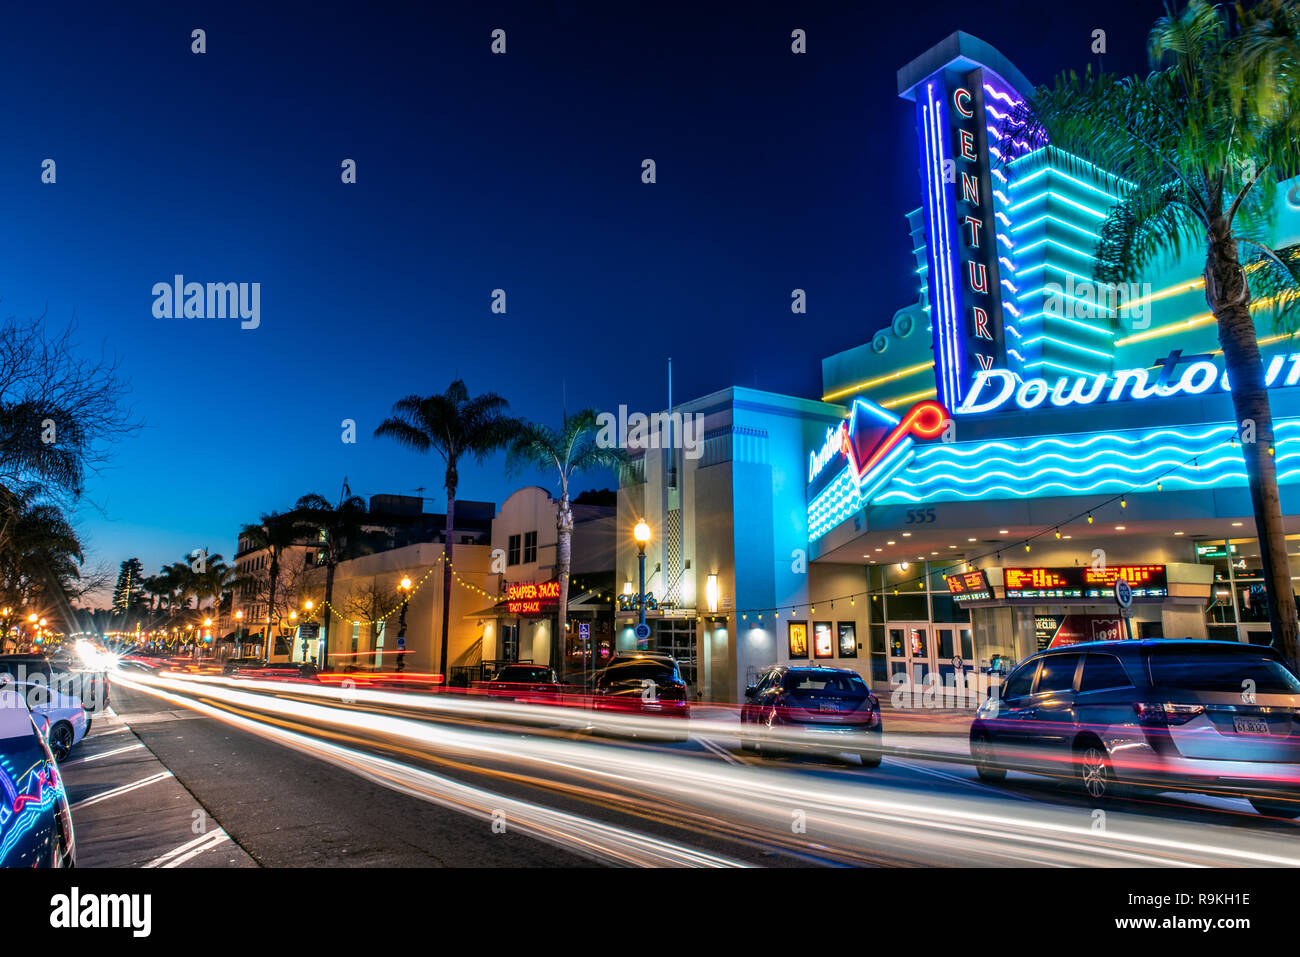 Main Street in der Innenstadt von Ventura, Kalifornien, USA, dekoriert mit Weihnachtsbeleuchtung und Streifenbildung verkehr Scheinwerfer unter gradient Dämmerung Himmel auf Weihnachten Stockfoto